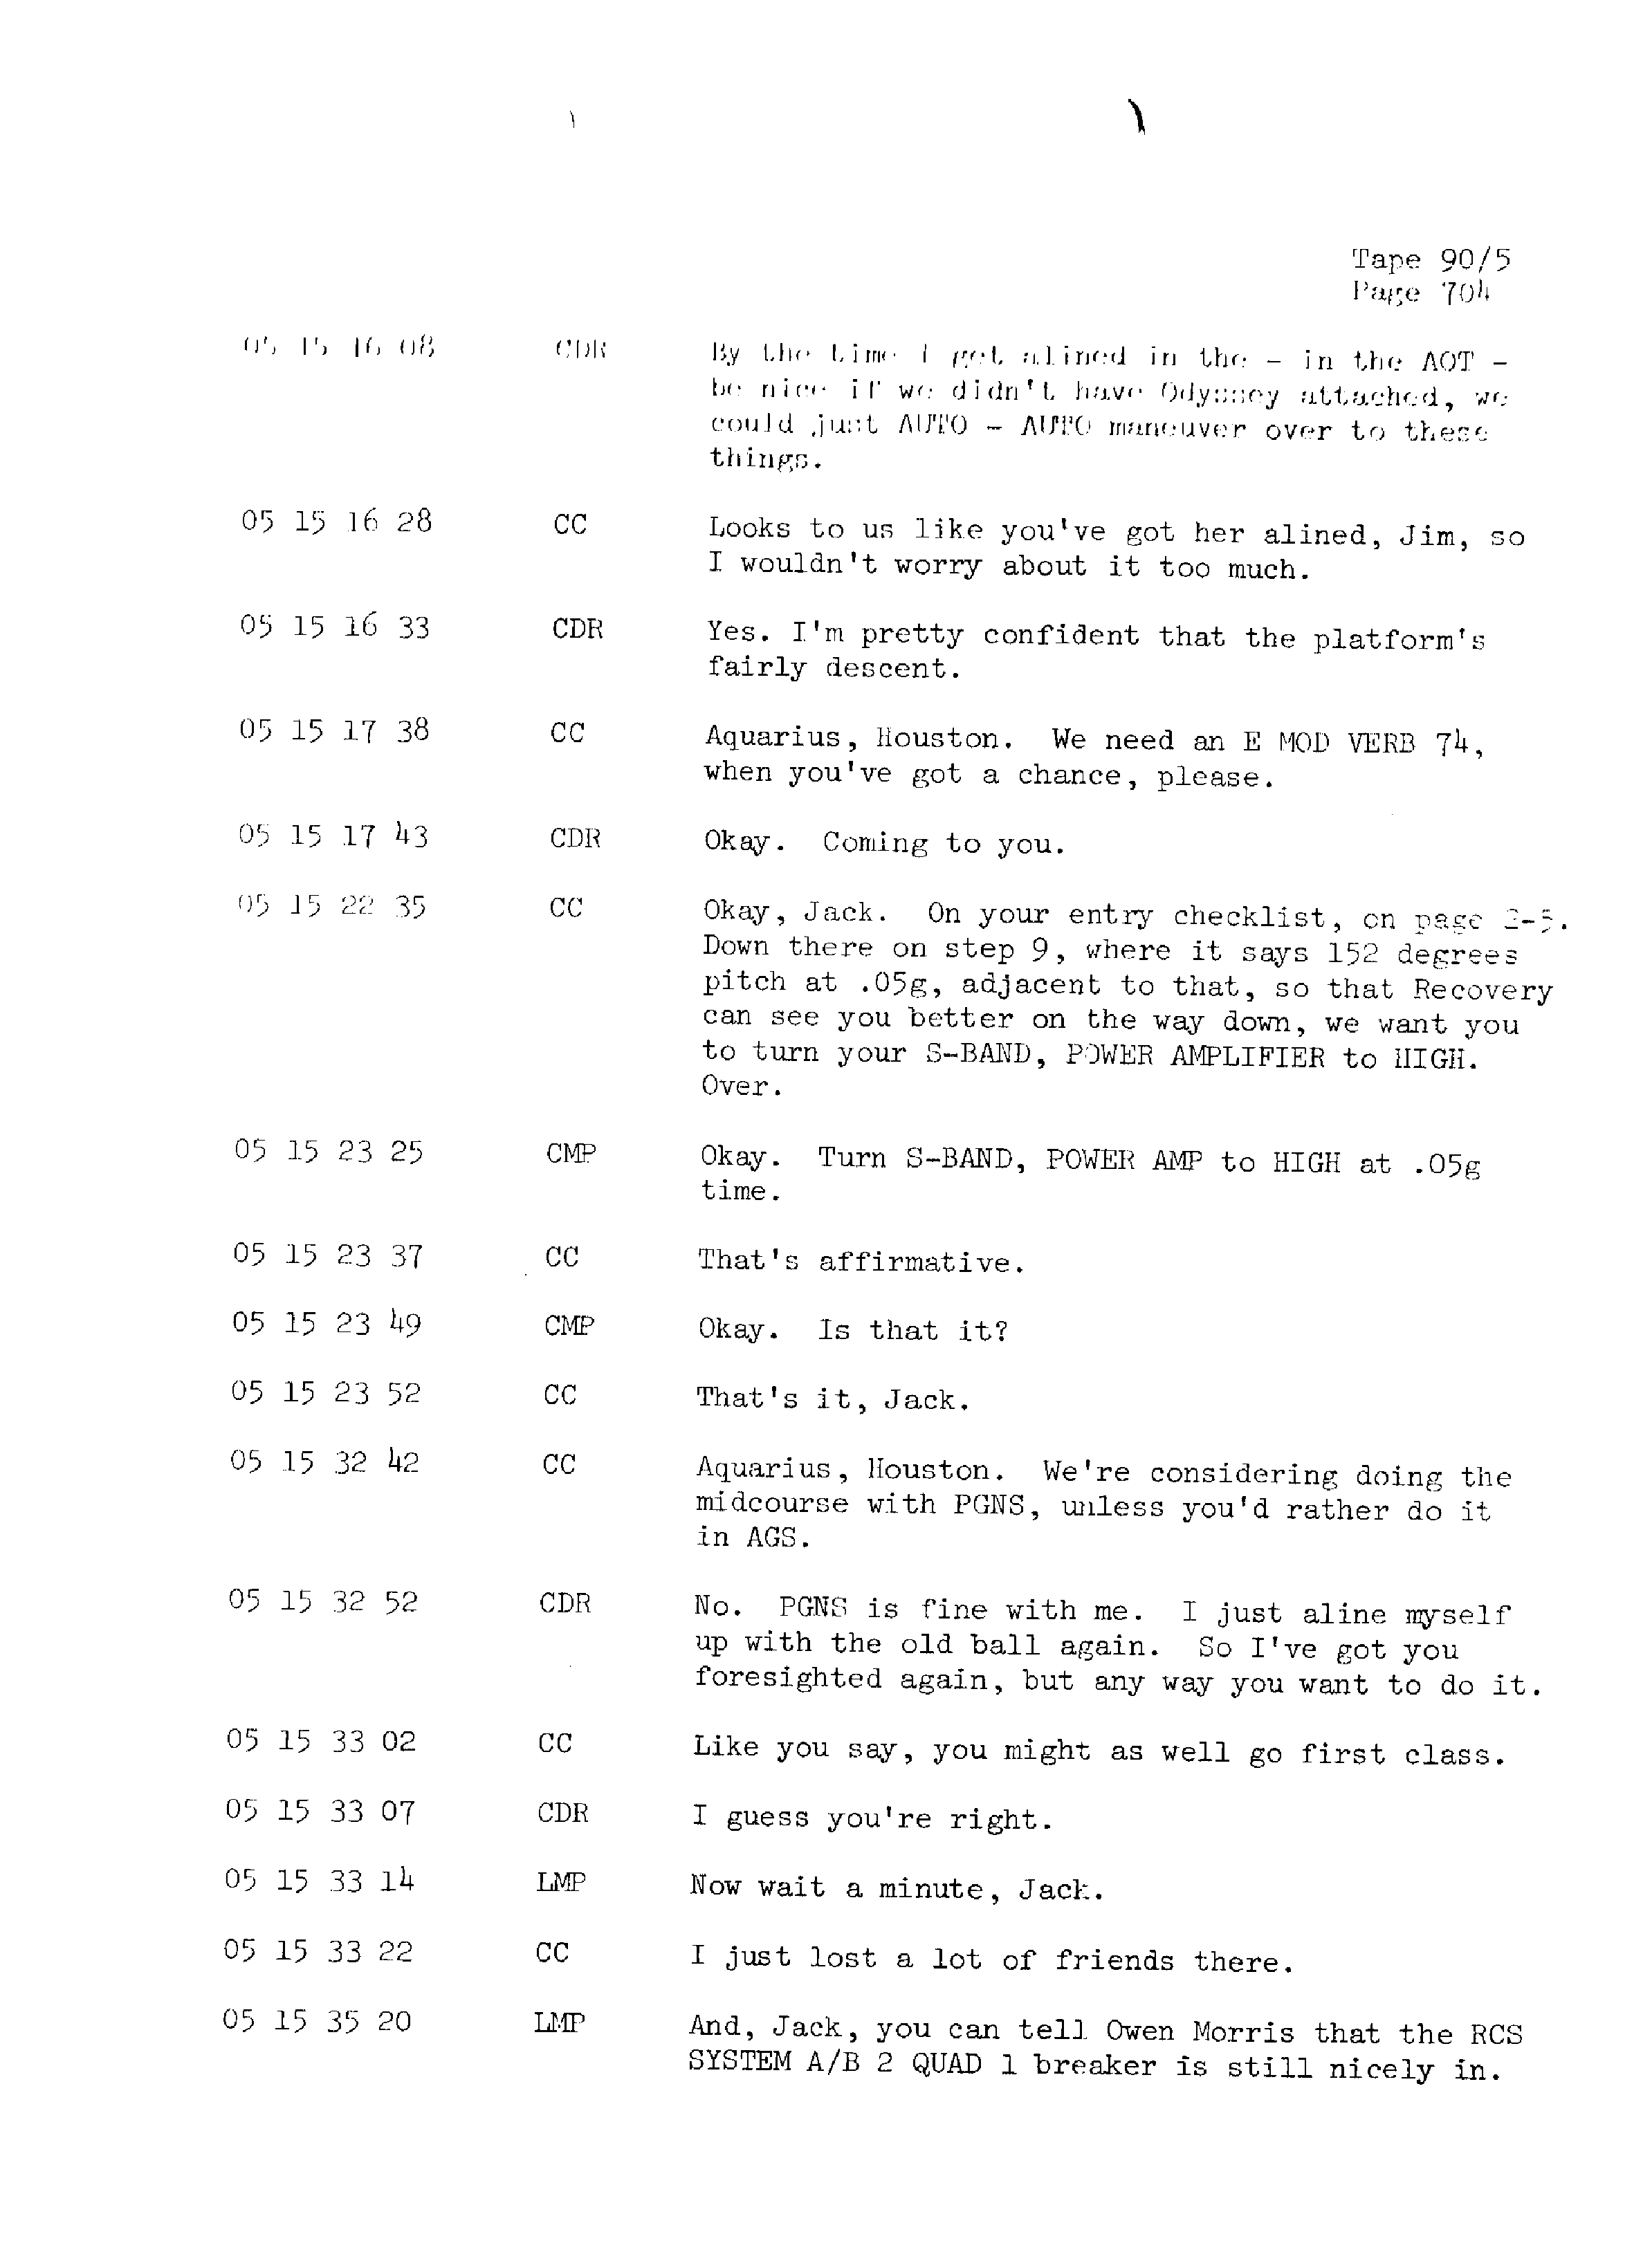 Page 711 of Apollo 13’s original transcript